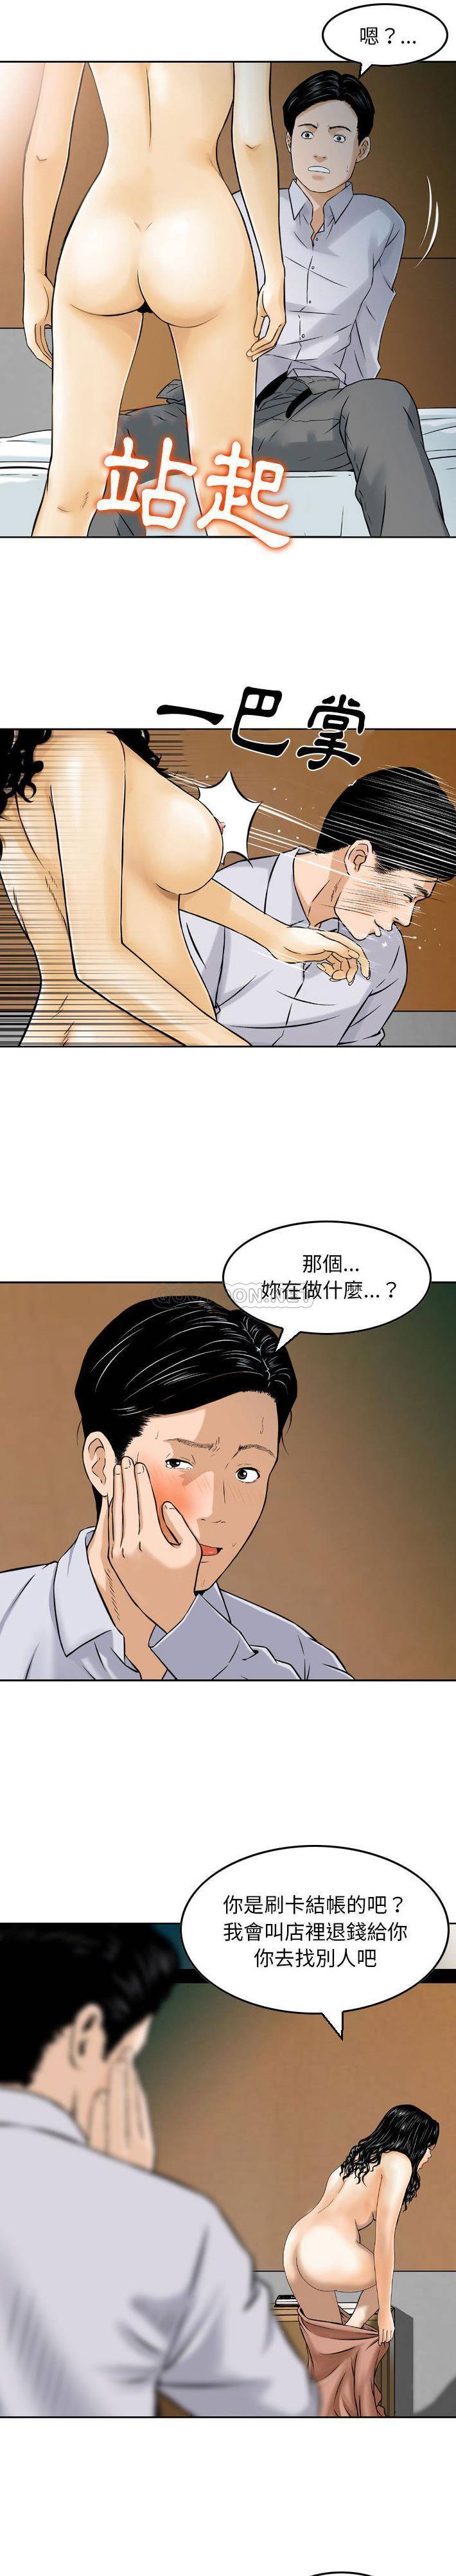 韩国污漫画 金錢的魅力 第2话 8